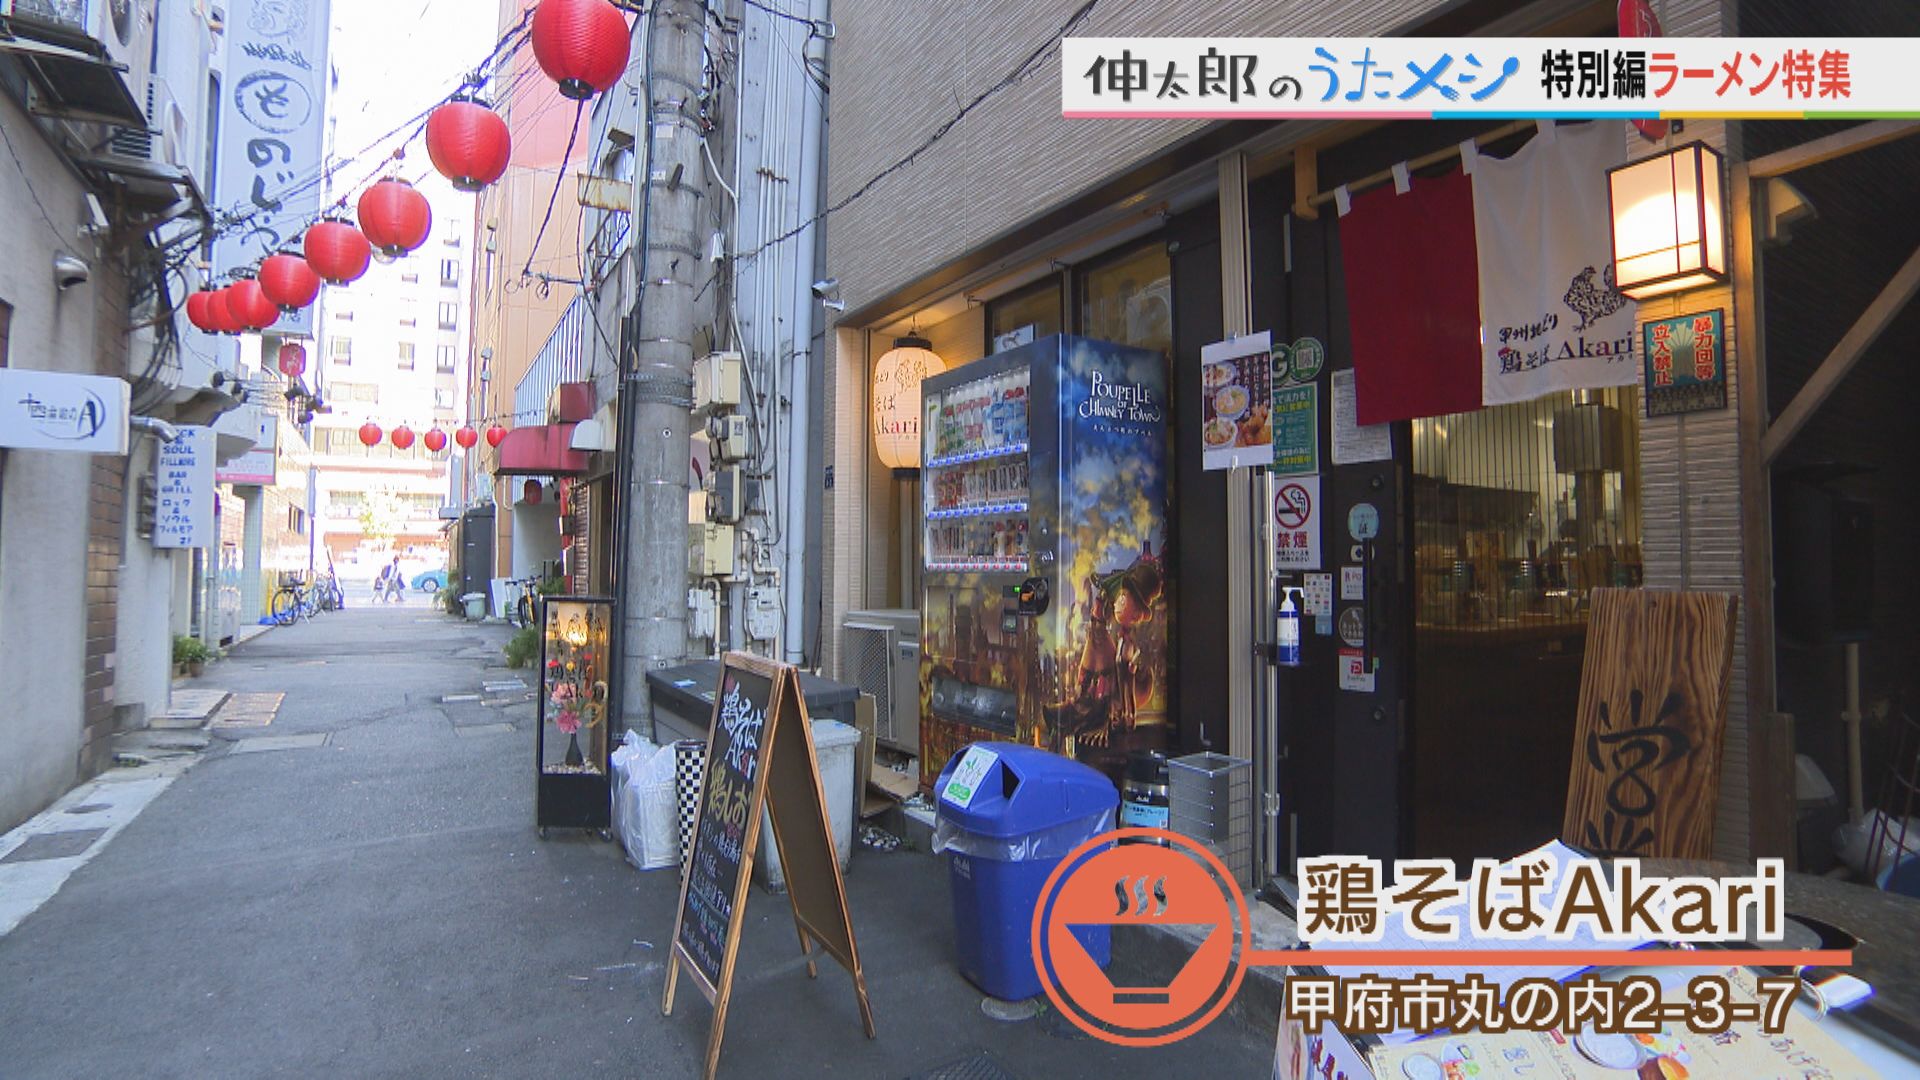 焼き鳥屋が始めたラーメン店『鶏そばAkari』